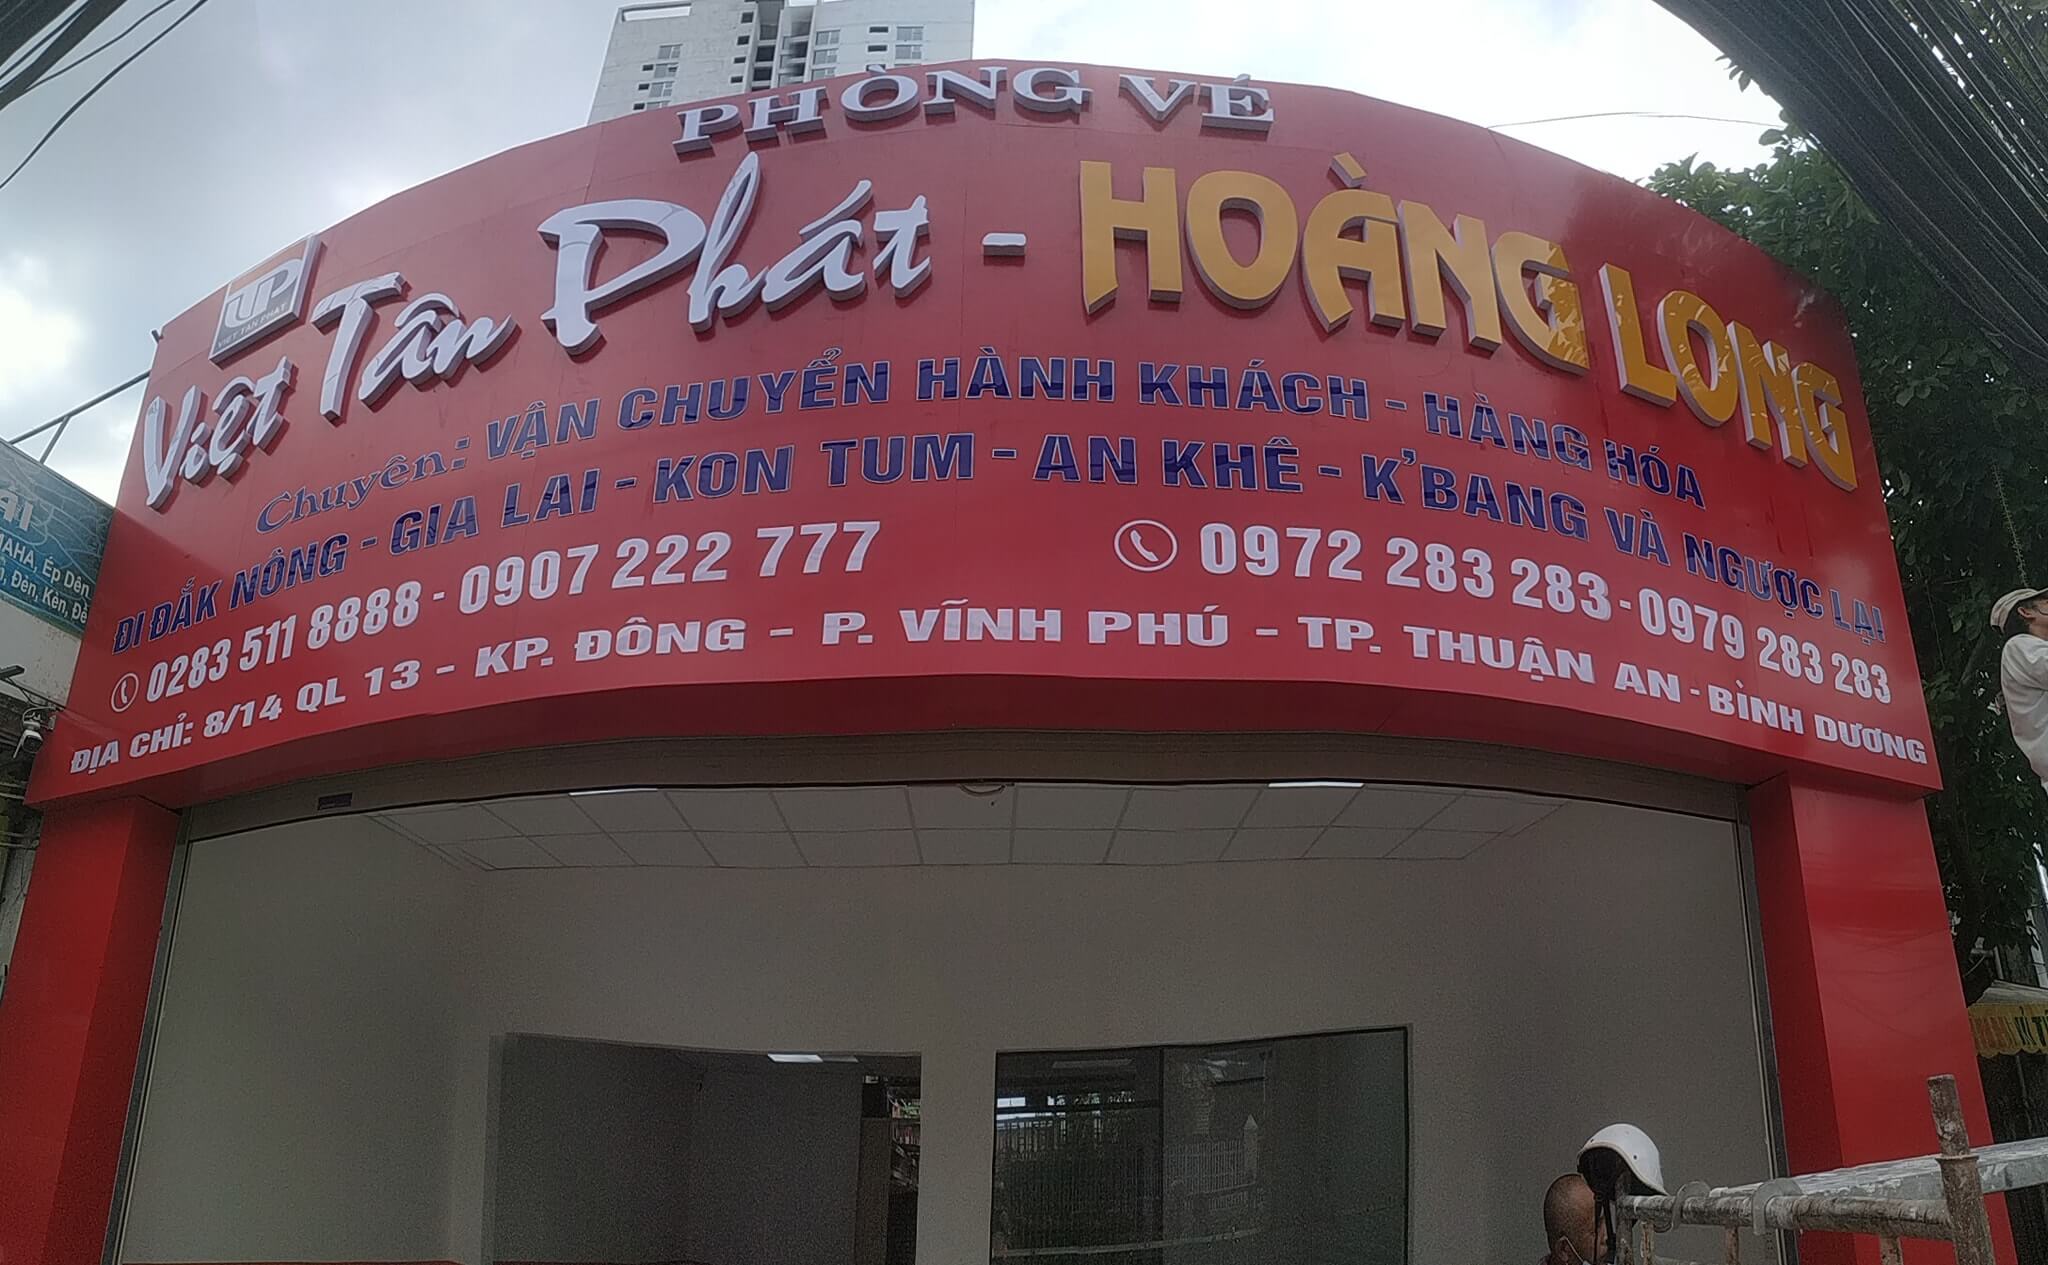 Phòng vé nhà xe Việt Tân Phát